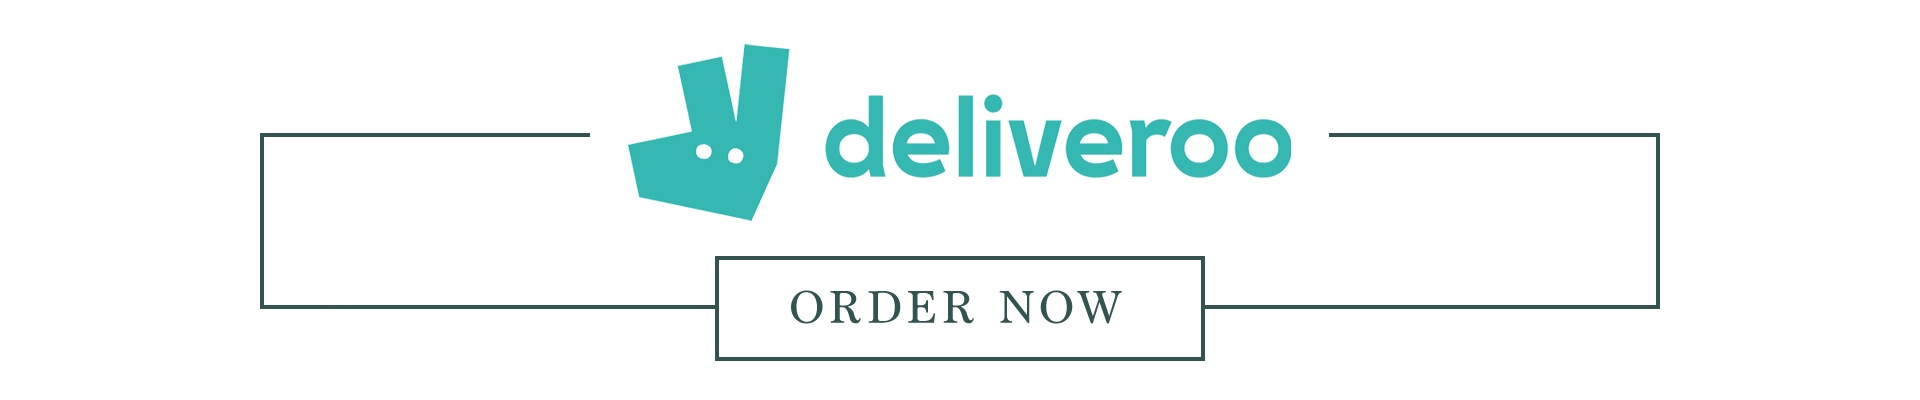 vv-deliveroo-deliveroo-thin-banner.png